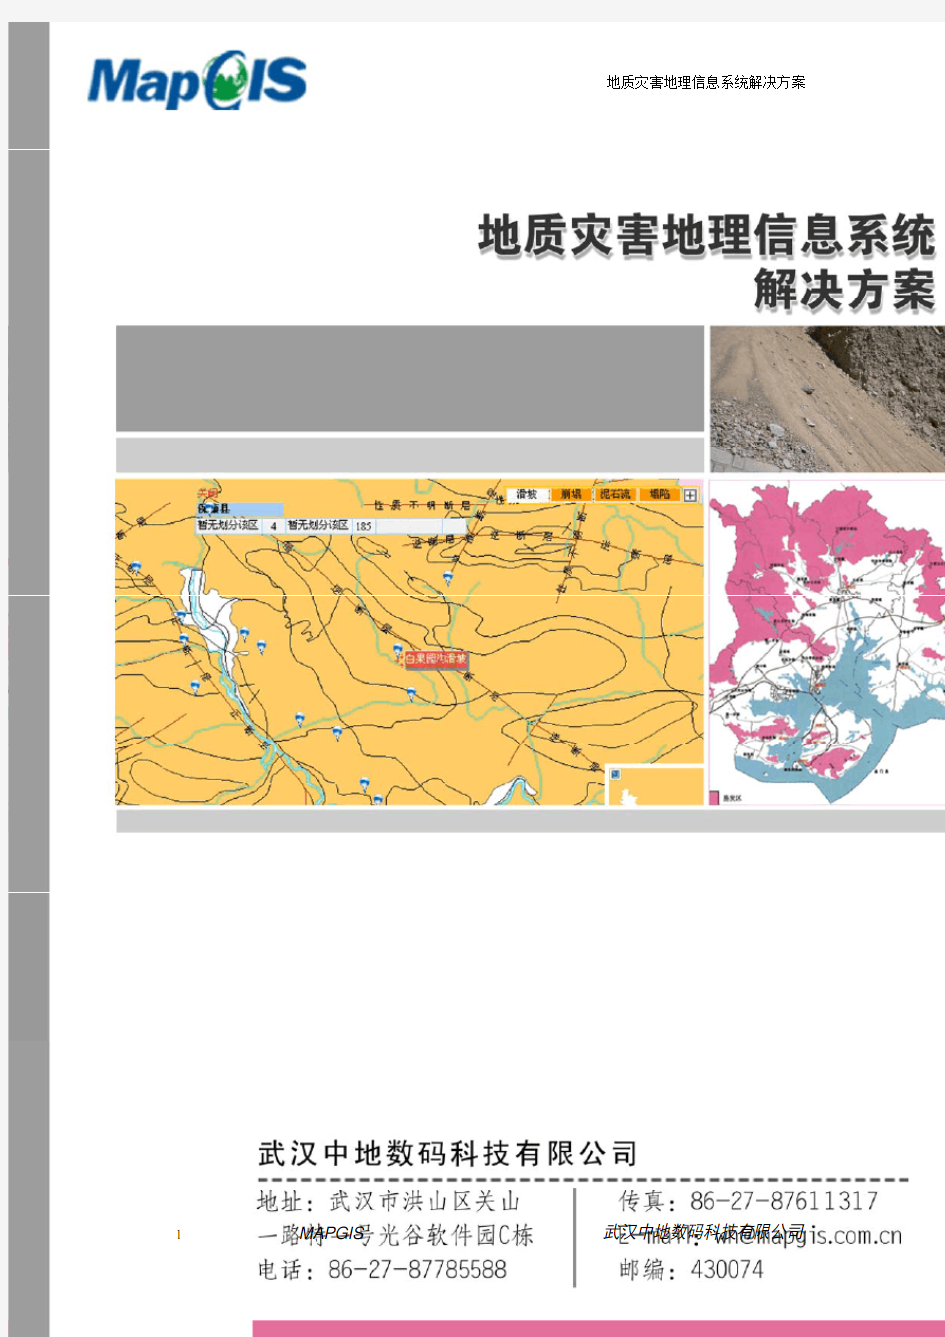 mapgis地质灾害地理信息系统解决方案